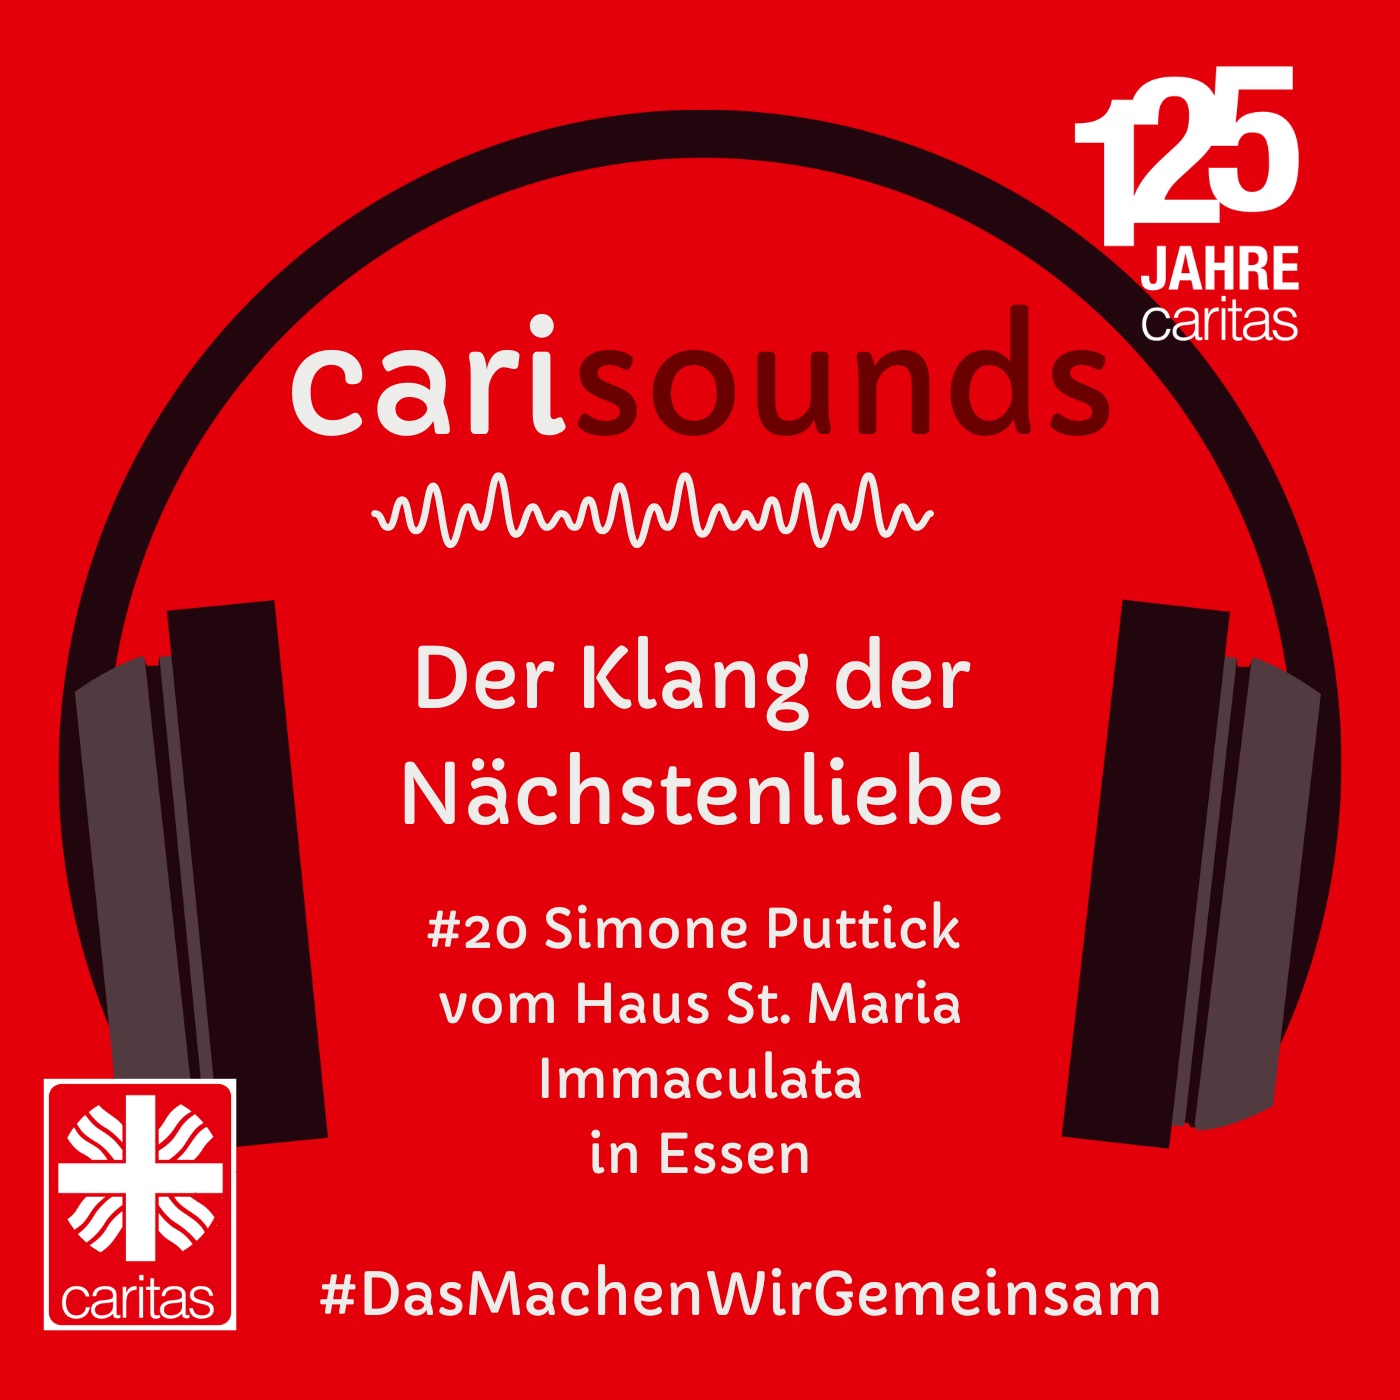 #20 carisounds - Der Klang der Nächstenliebe - Simone Puttick  vom Haus St. Maria Immaculata in Essen